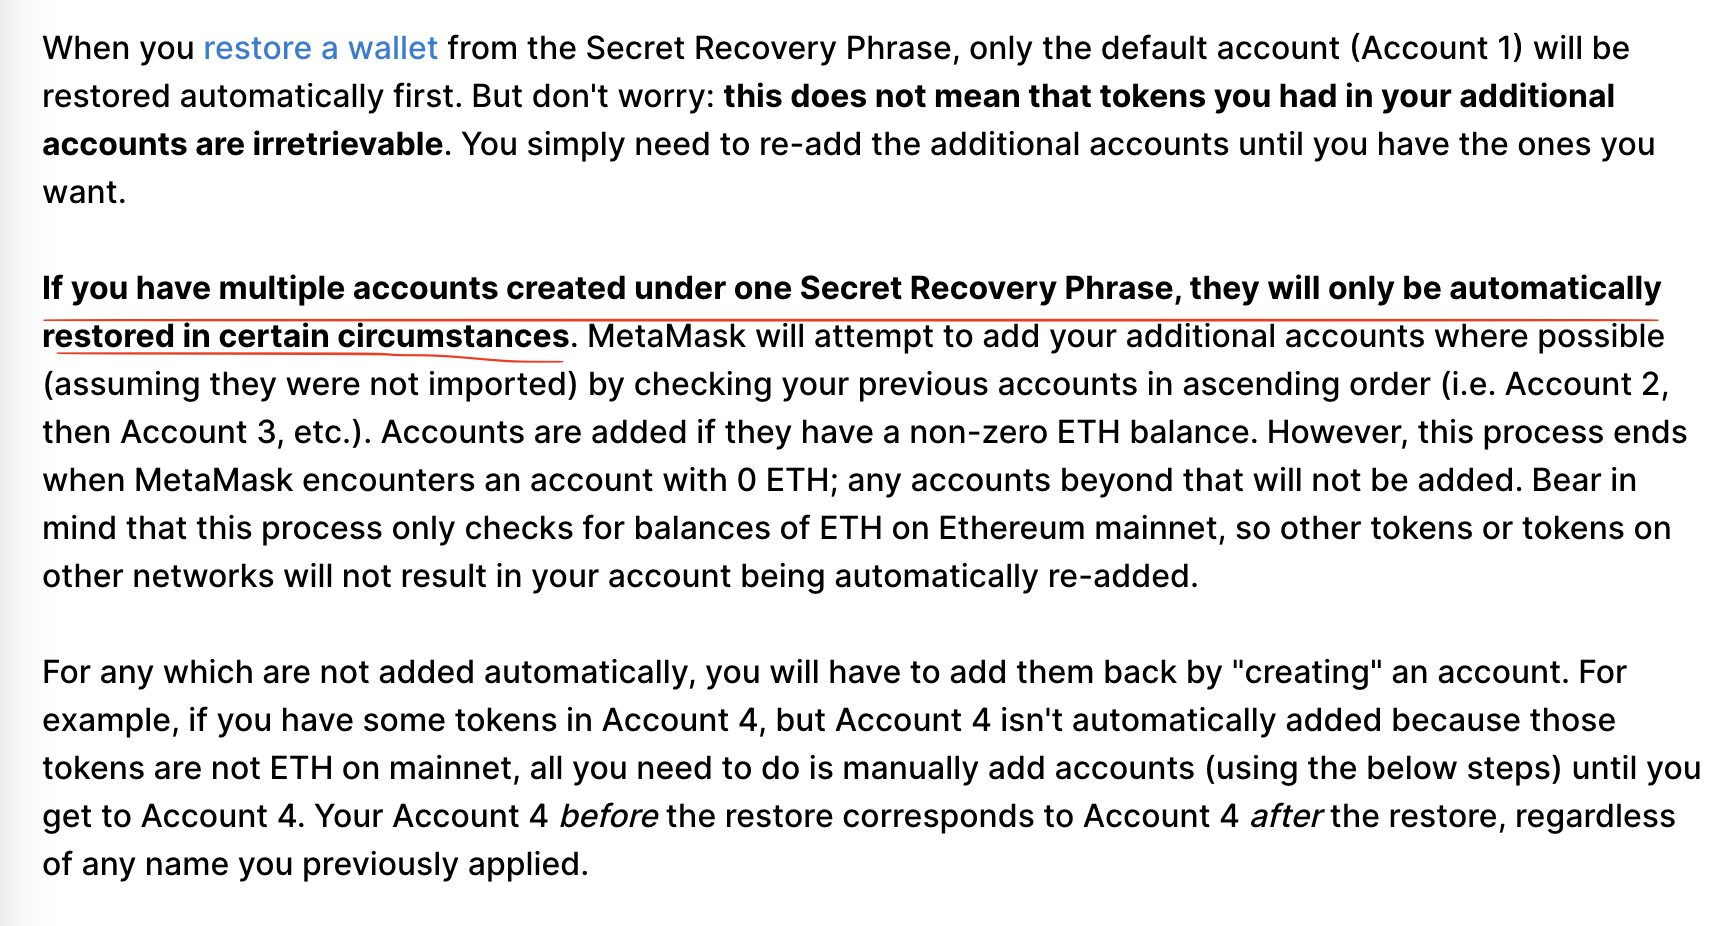 来源：https://metamask.zendesk.com/hc/en-us/articles/360015489271-How-to-add-missing-accounts-after-restoring-with-Secret-Recovery-Phrase